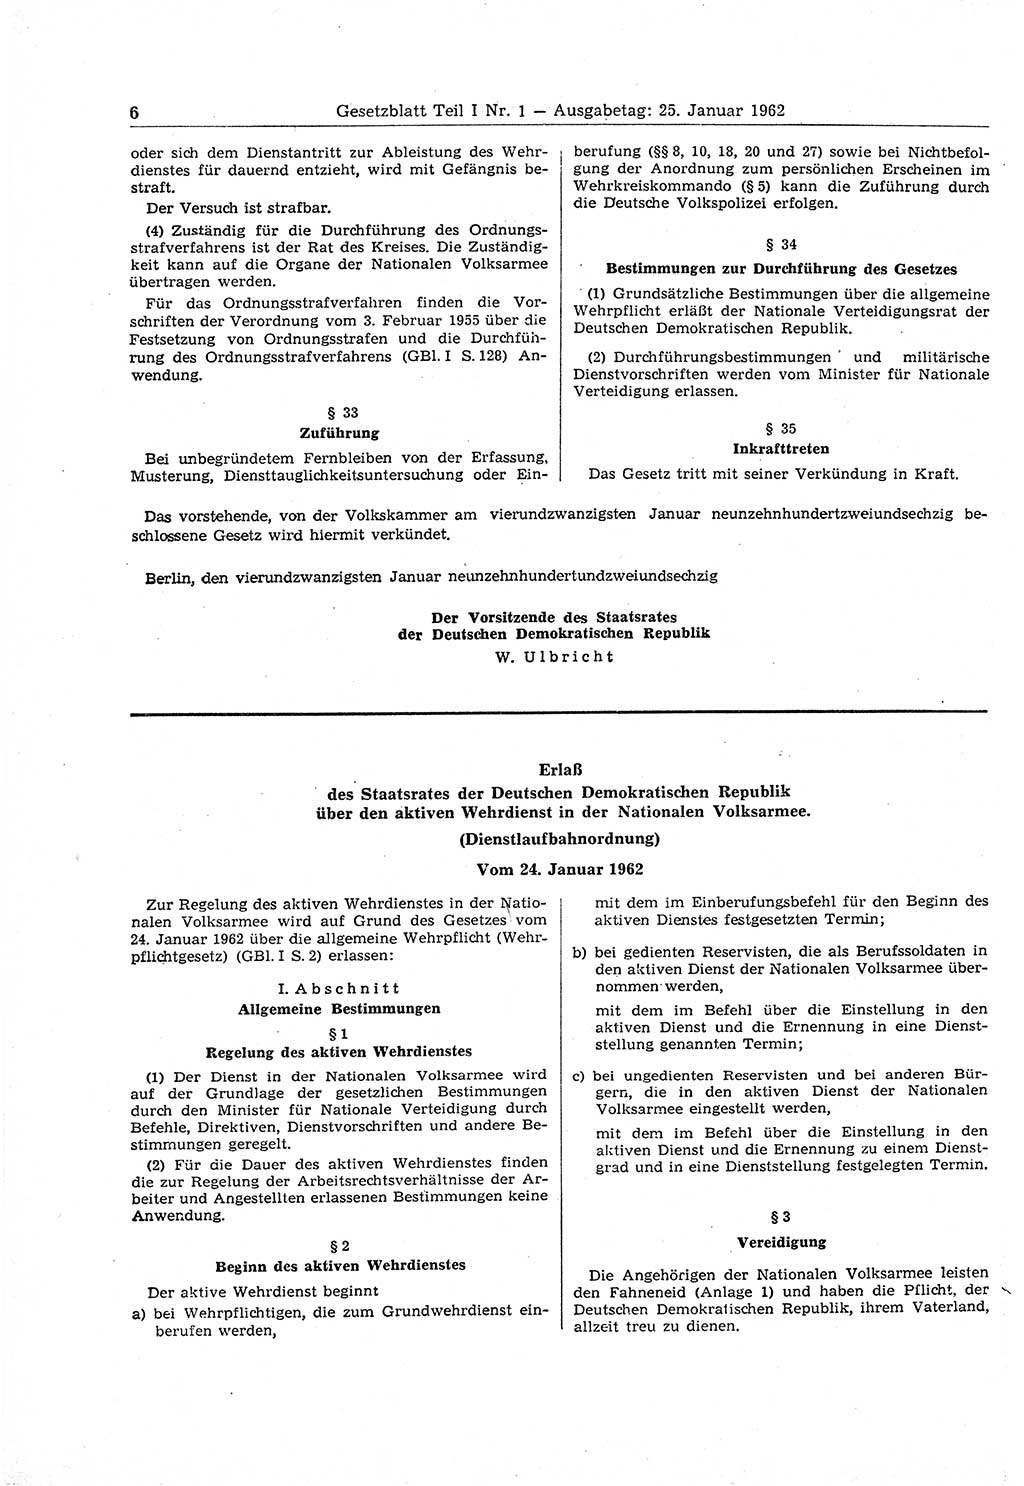 Gesetzblatt (GBl.) der Deutschen Demokratischen Republik (DDR) Teil Ⅰ 1962, Seite 6 (GBl. DDR Ⅰ 1962, S. 6)